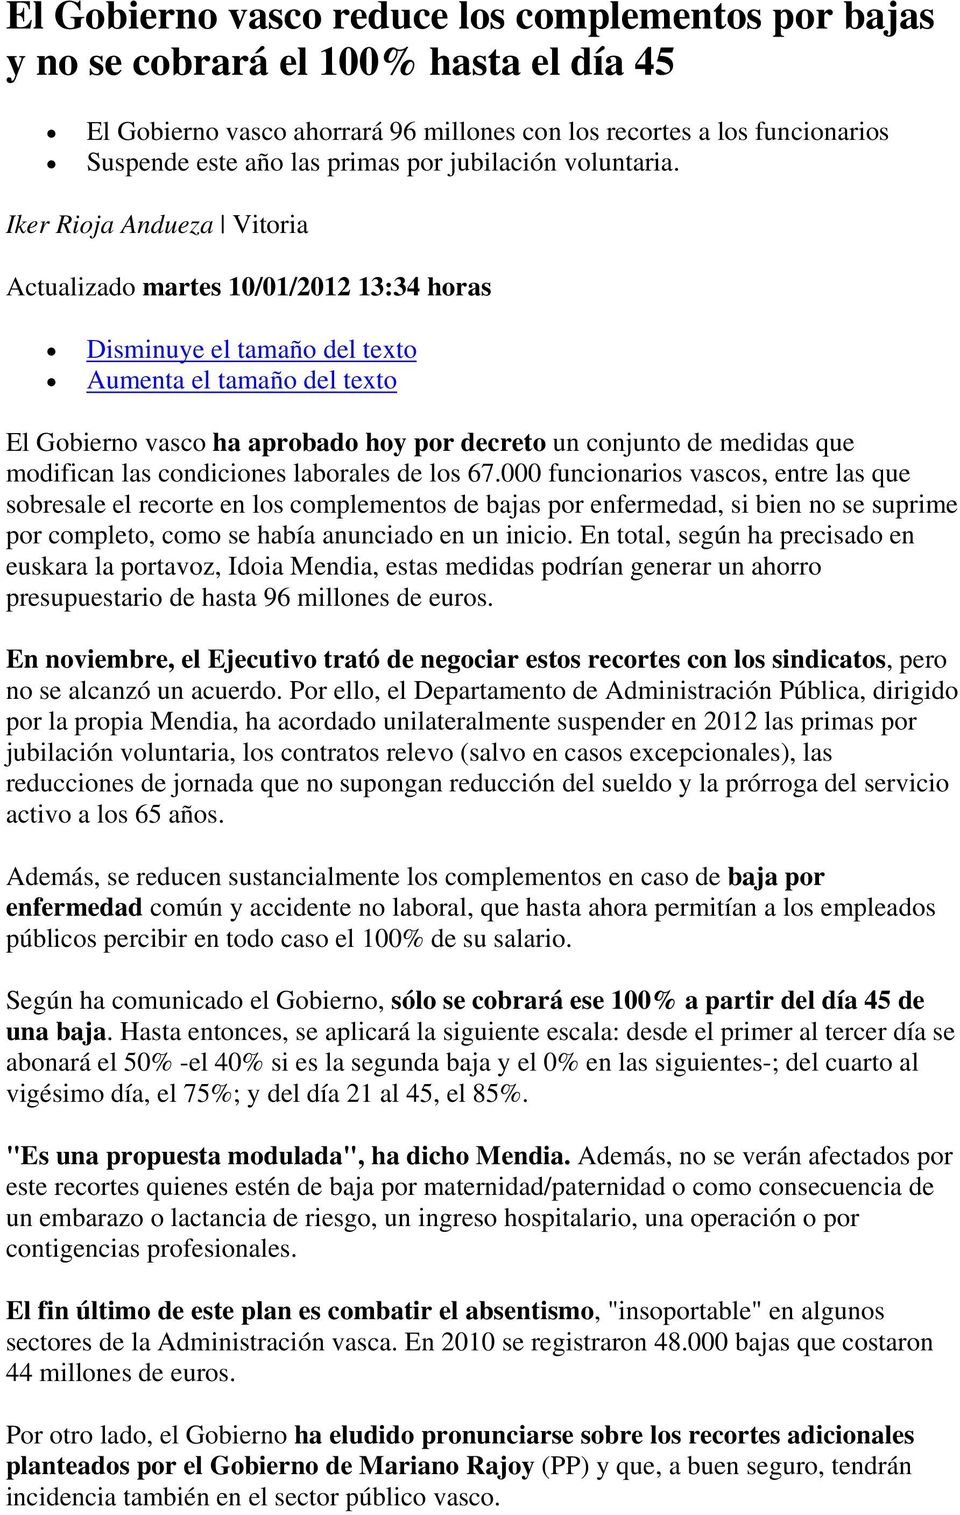 Iker Rioja Andueza Vitoria Actualizado martes 10/01/2012 13:34 horas Disminuye el tamaño del texto Aumenta el tamaño del texto El Gobierno vasco ha aprobado hoy por decreto un conjunto de medidas que